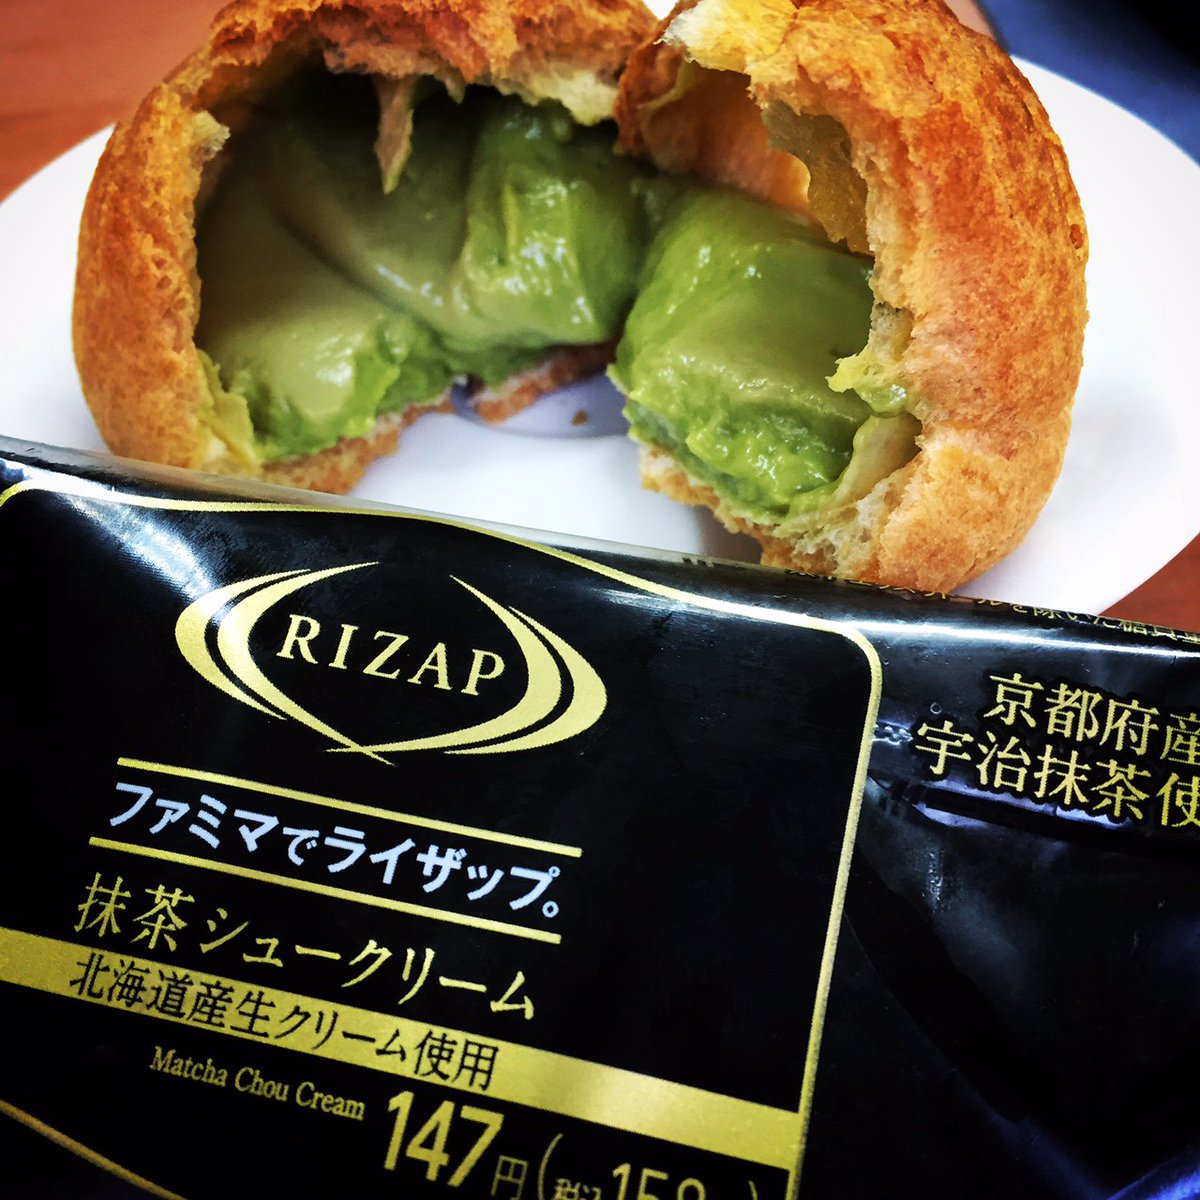 セカンドポスト 海外転送 渋谷 札幌シェアアドレス Twitter પર ライザップ Rizap ダイエット シュークリーム ファミマ 抹茶シュー ライザップとファミマのコラボシューです これを食べて太ったらライザップしてほしいという 笑笑 ๑ ๑